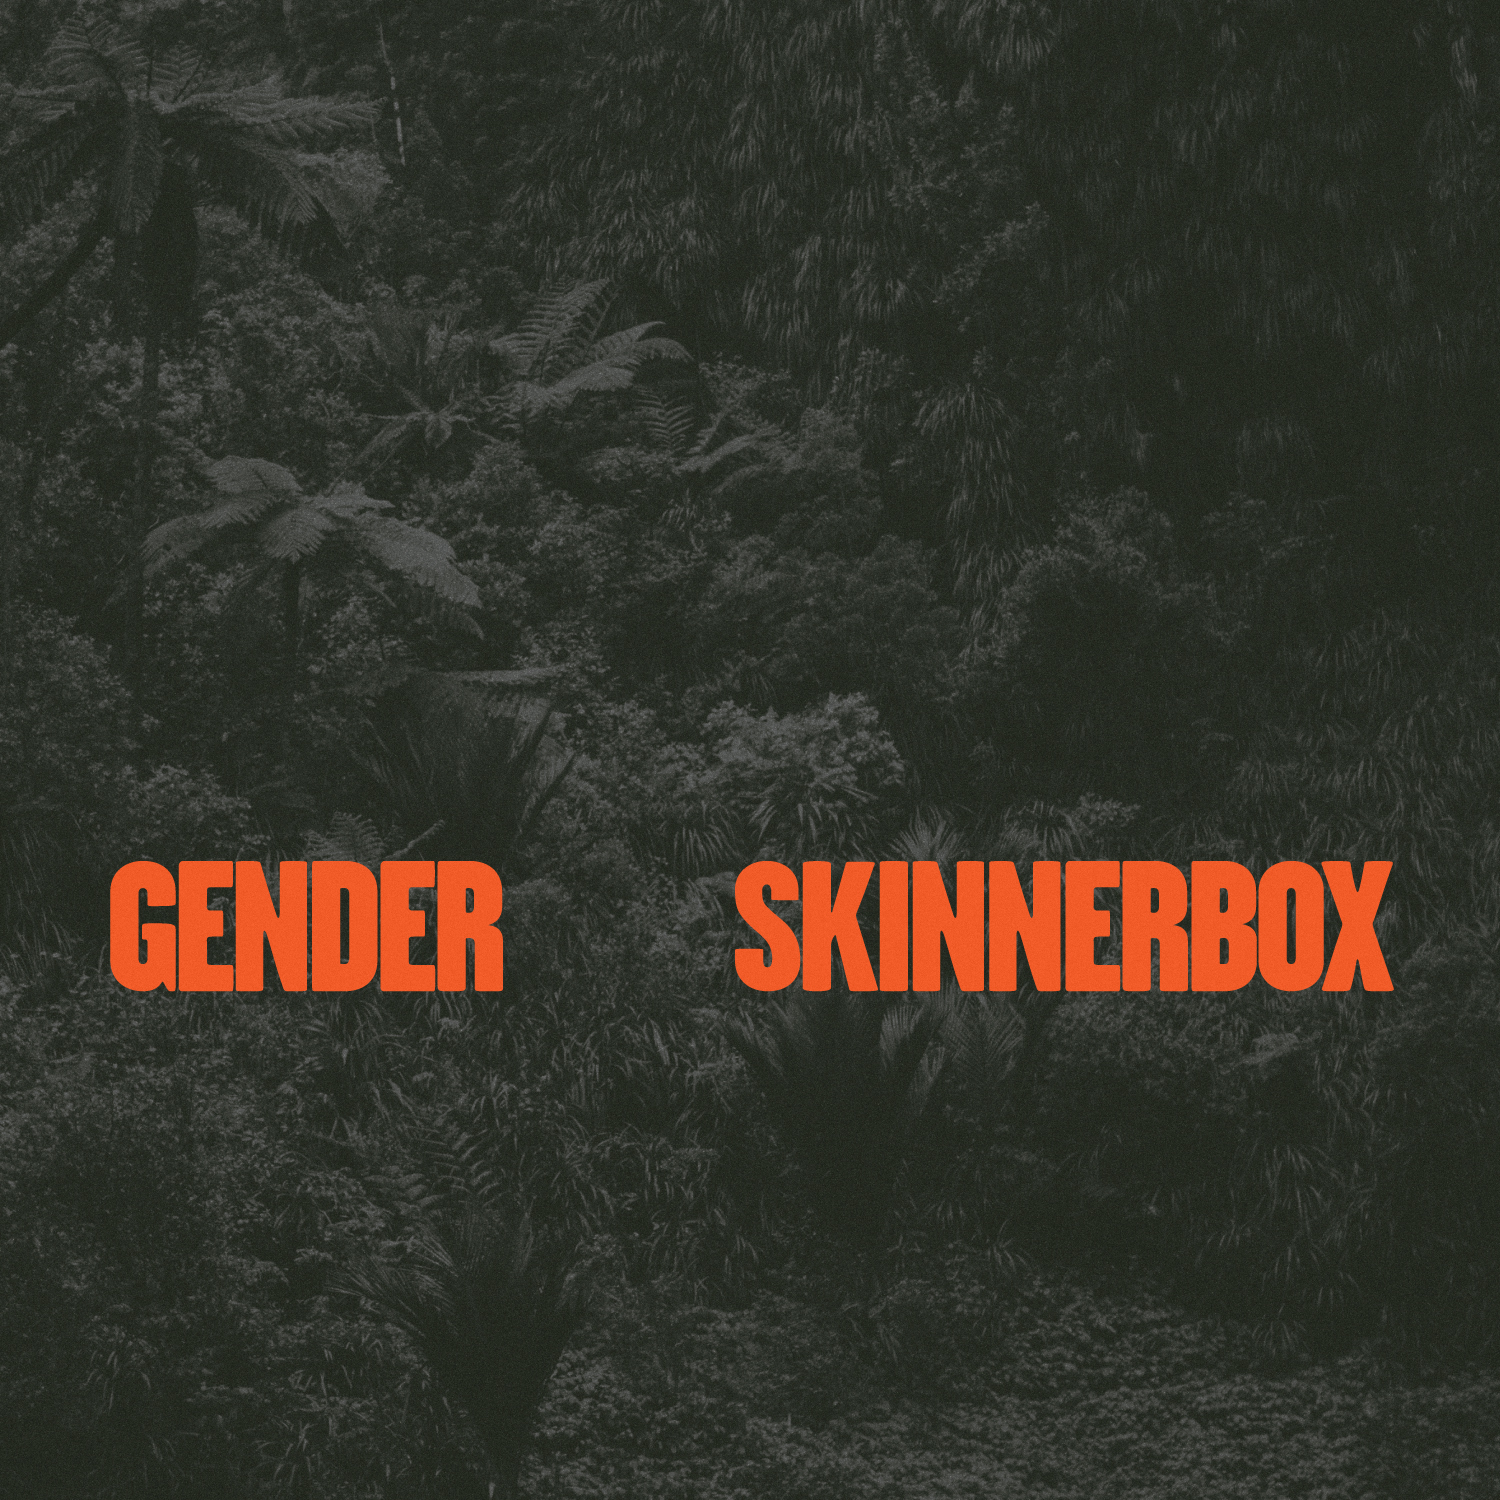 ডাউনলোড করুন Skinnerbox - Gender (Original Mix)